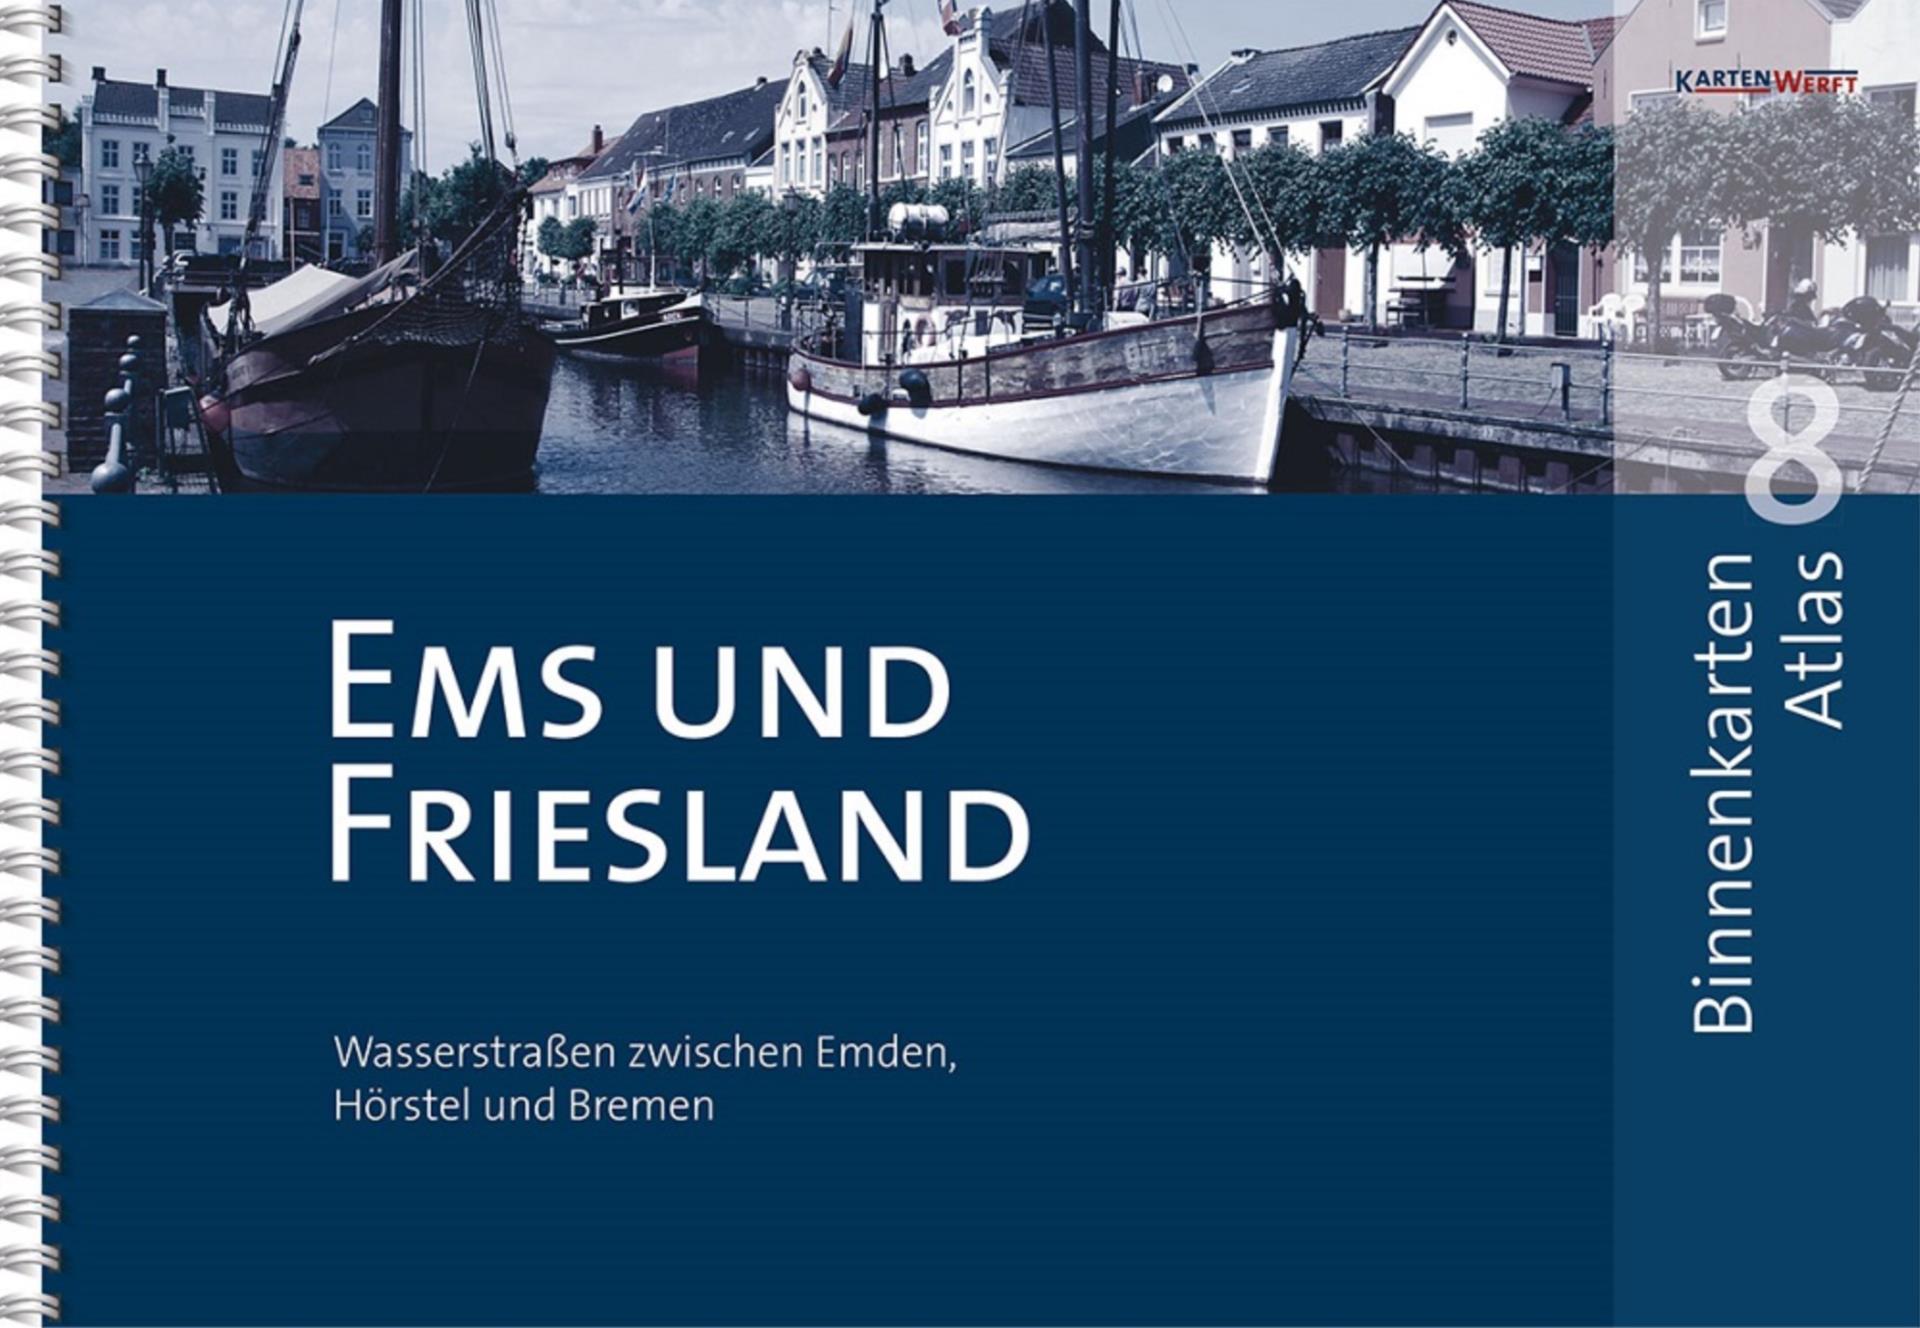 Kartenwerft Binnen Atlas 8, Ems und Friesland